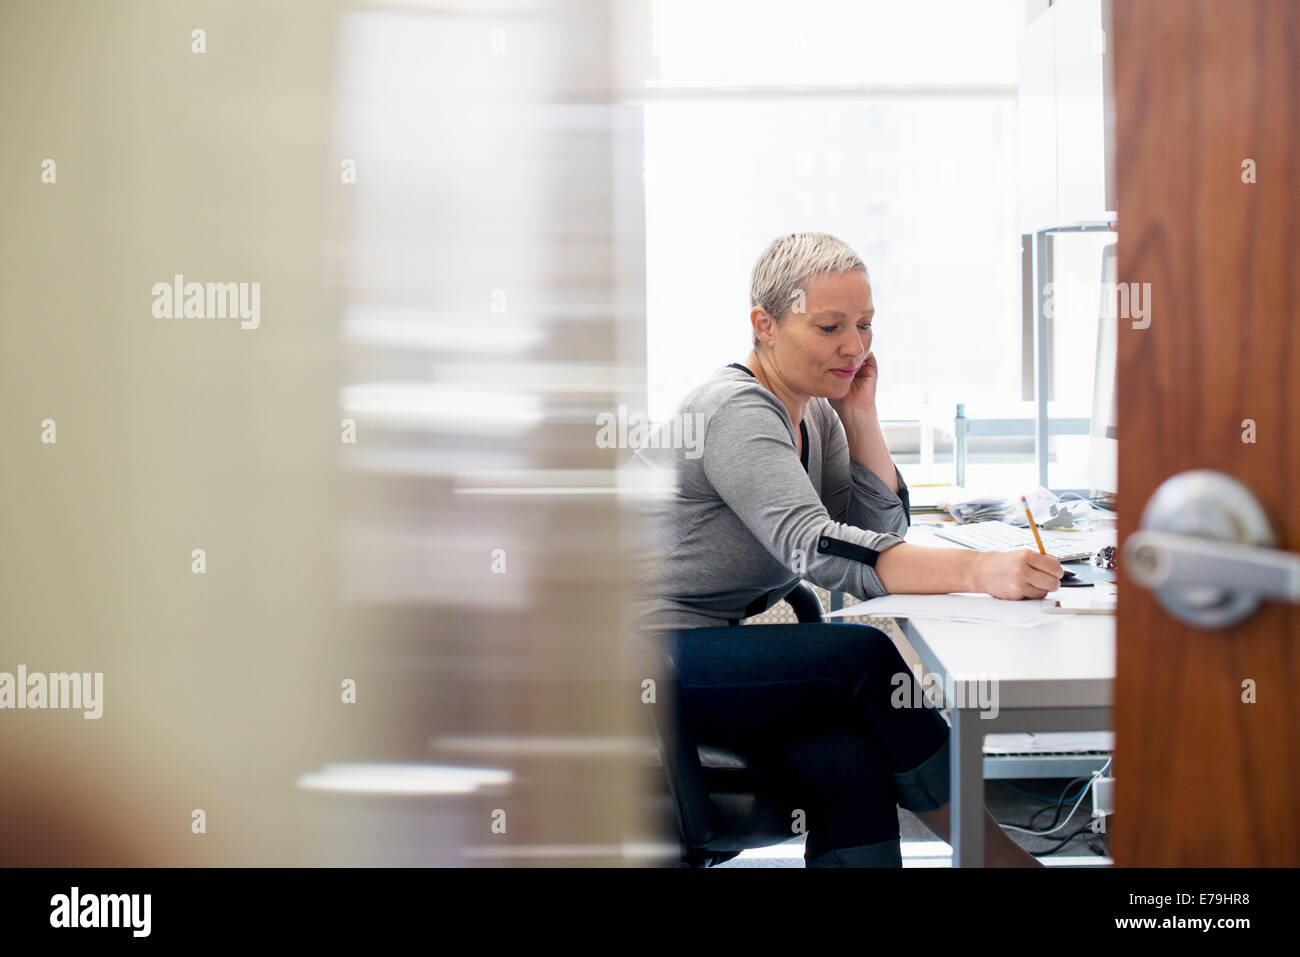 Eine Frau arbeitet in einem Büro alleine. Konzentration auf eine Aufgabe, die Notizen mit einem Bleistift. Stockfoto